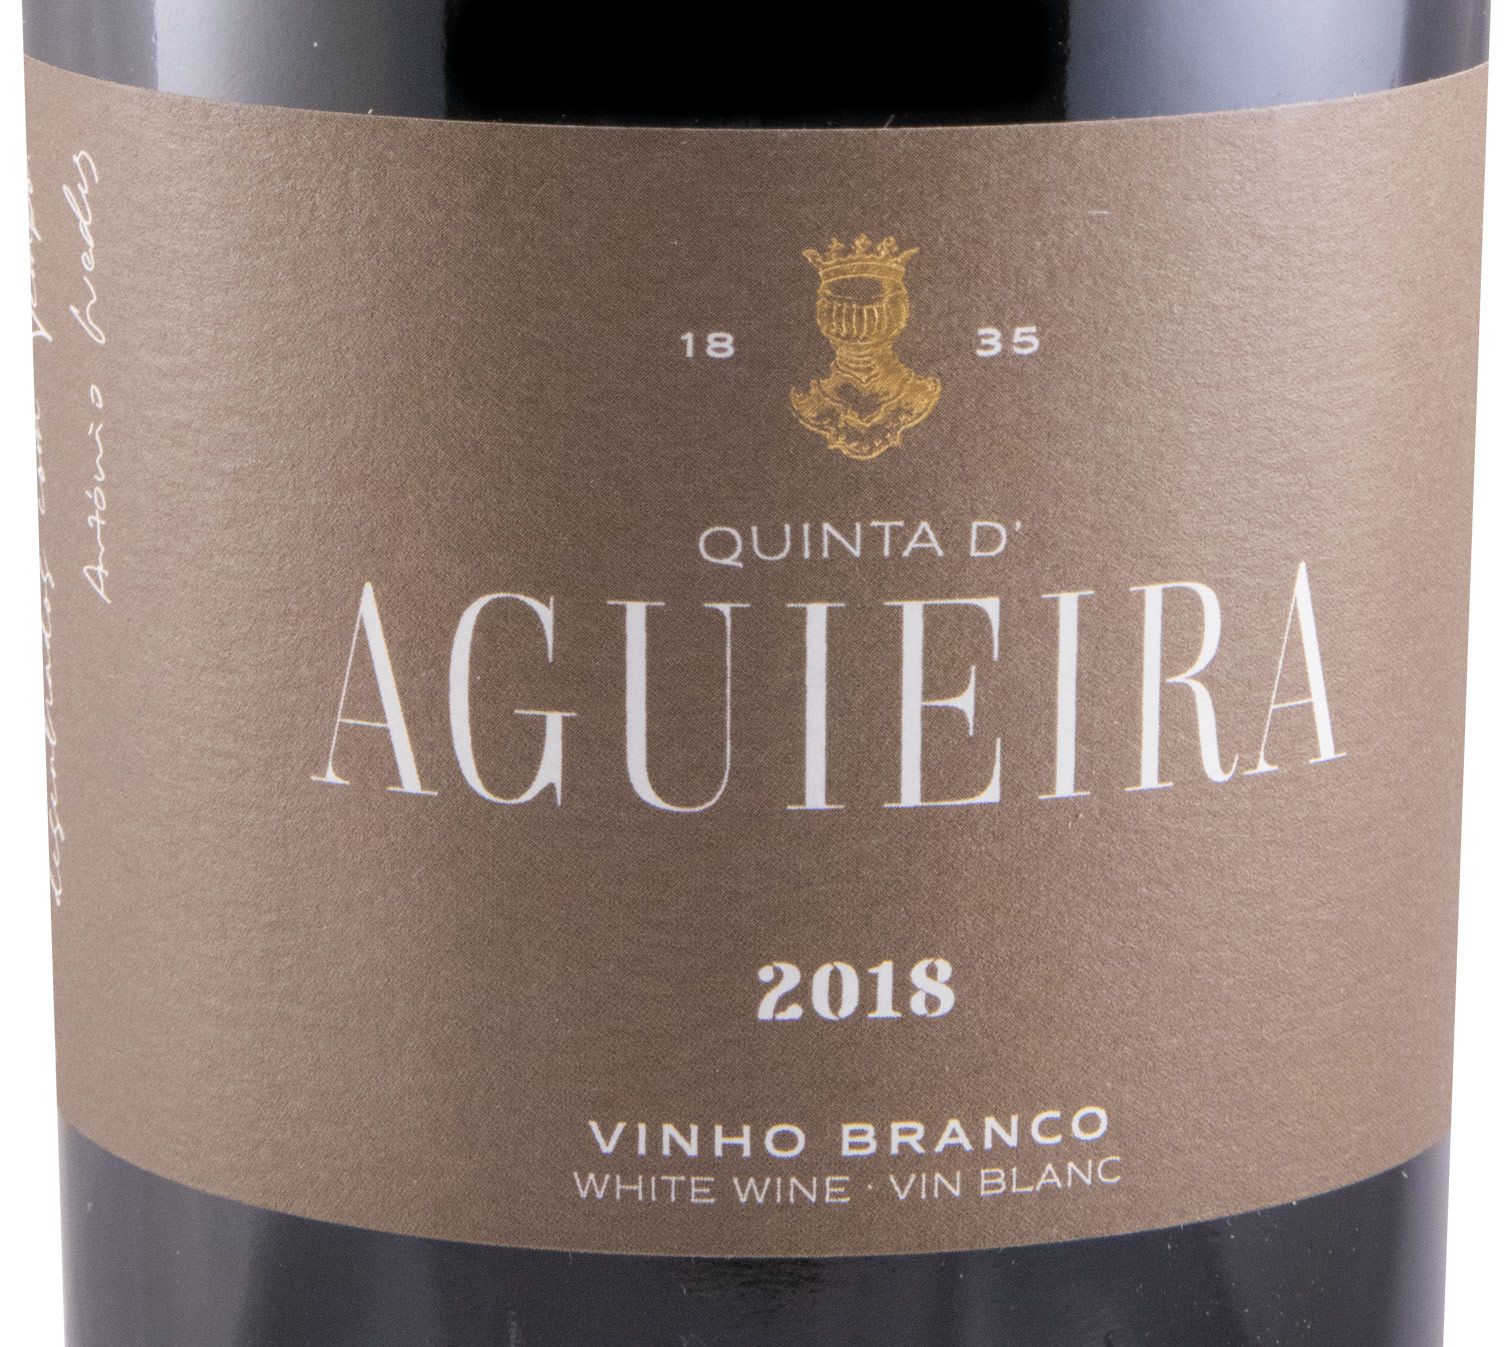 2018 Aveleda Quinta d'Aguieira white